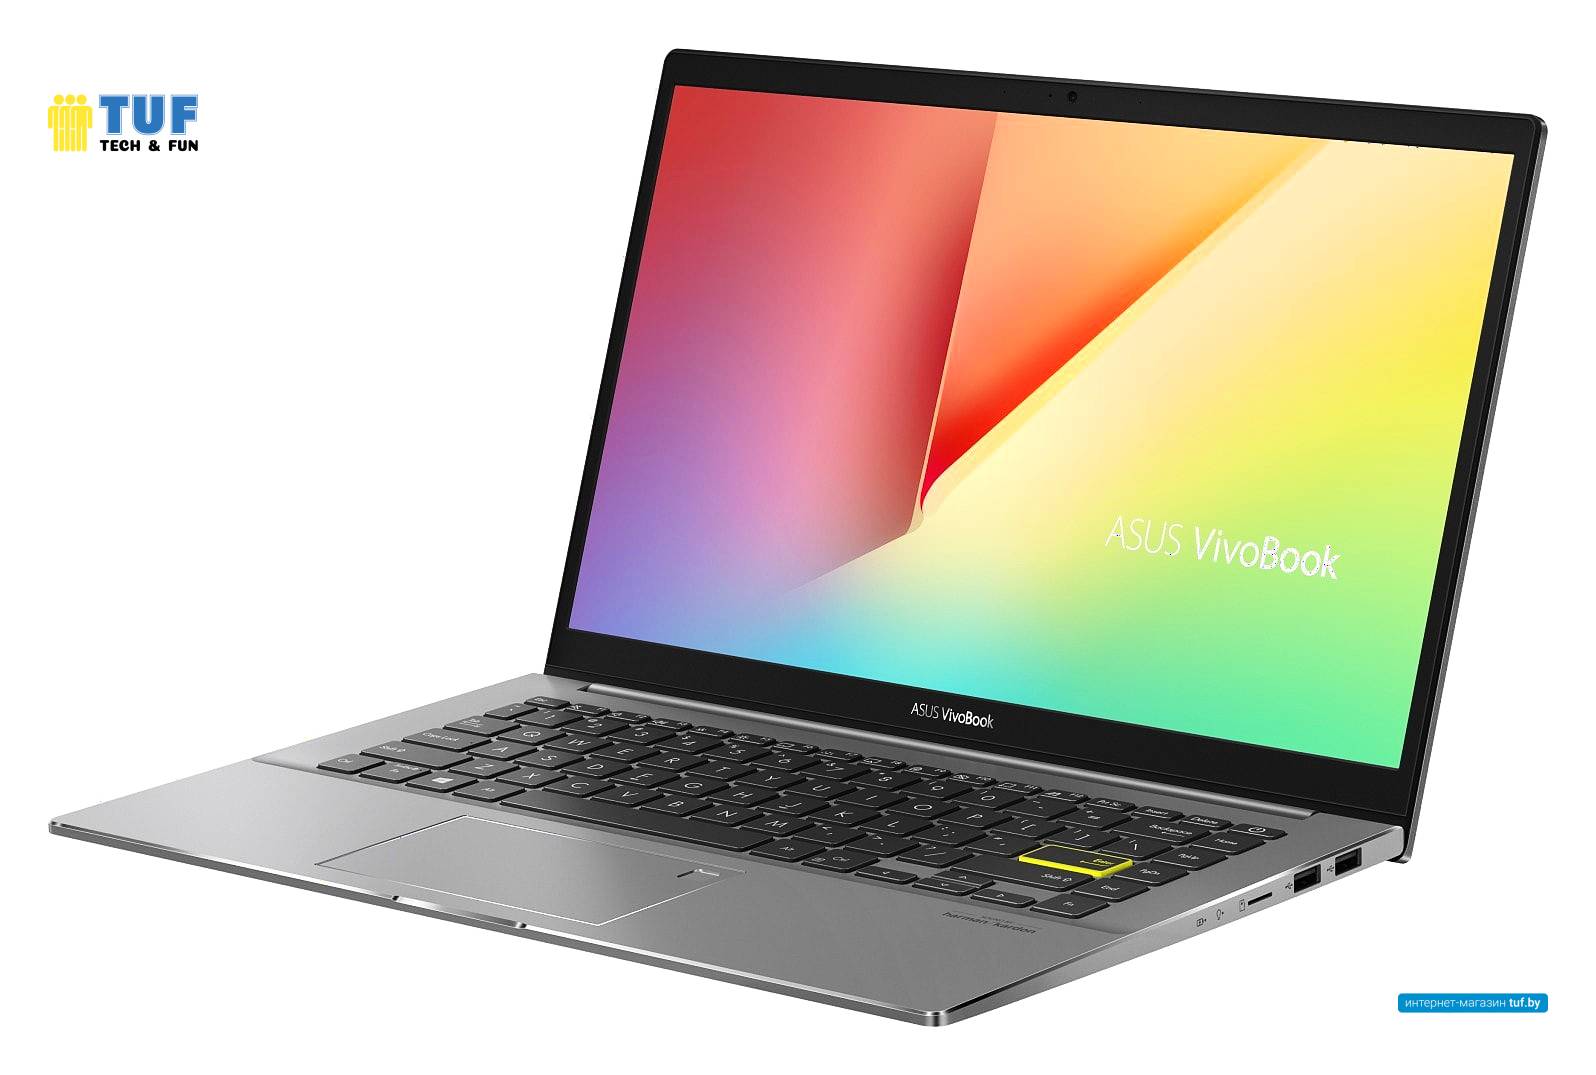 Ноутбук ASUS VivoBook S14 S433EA-KI2070